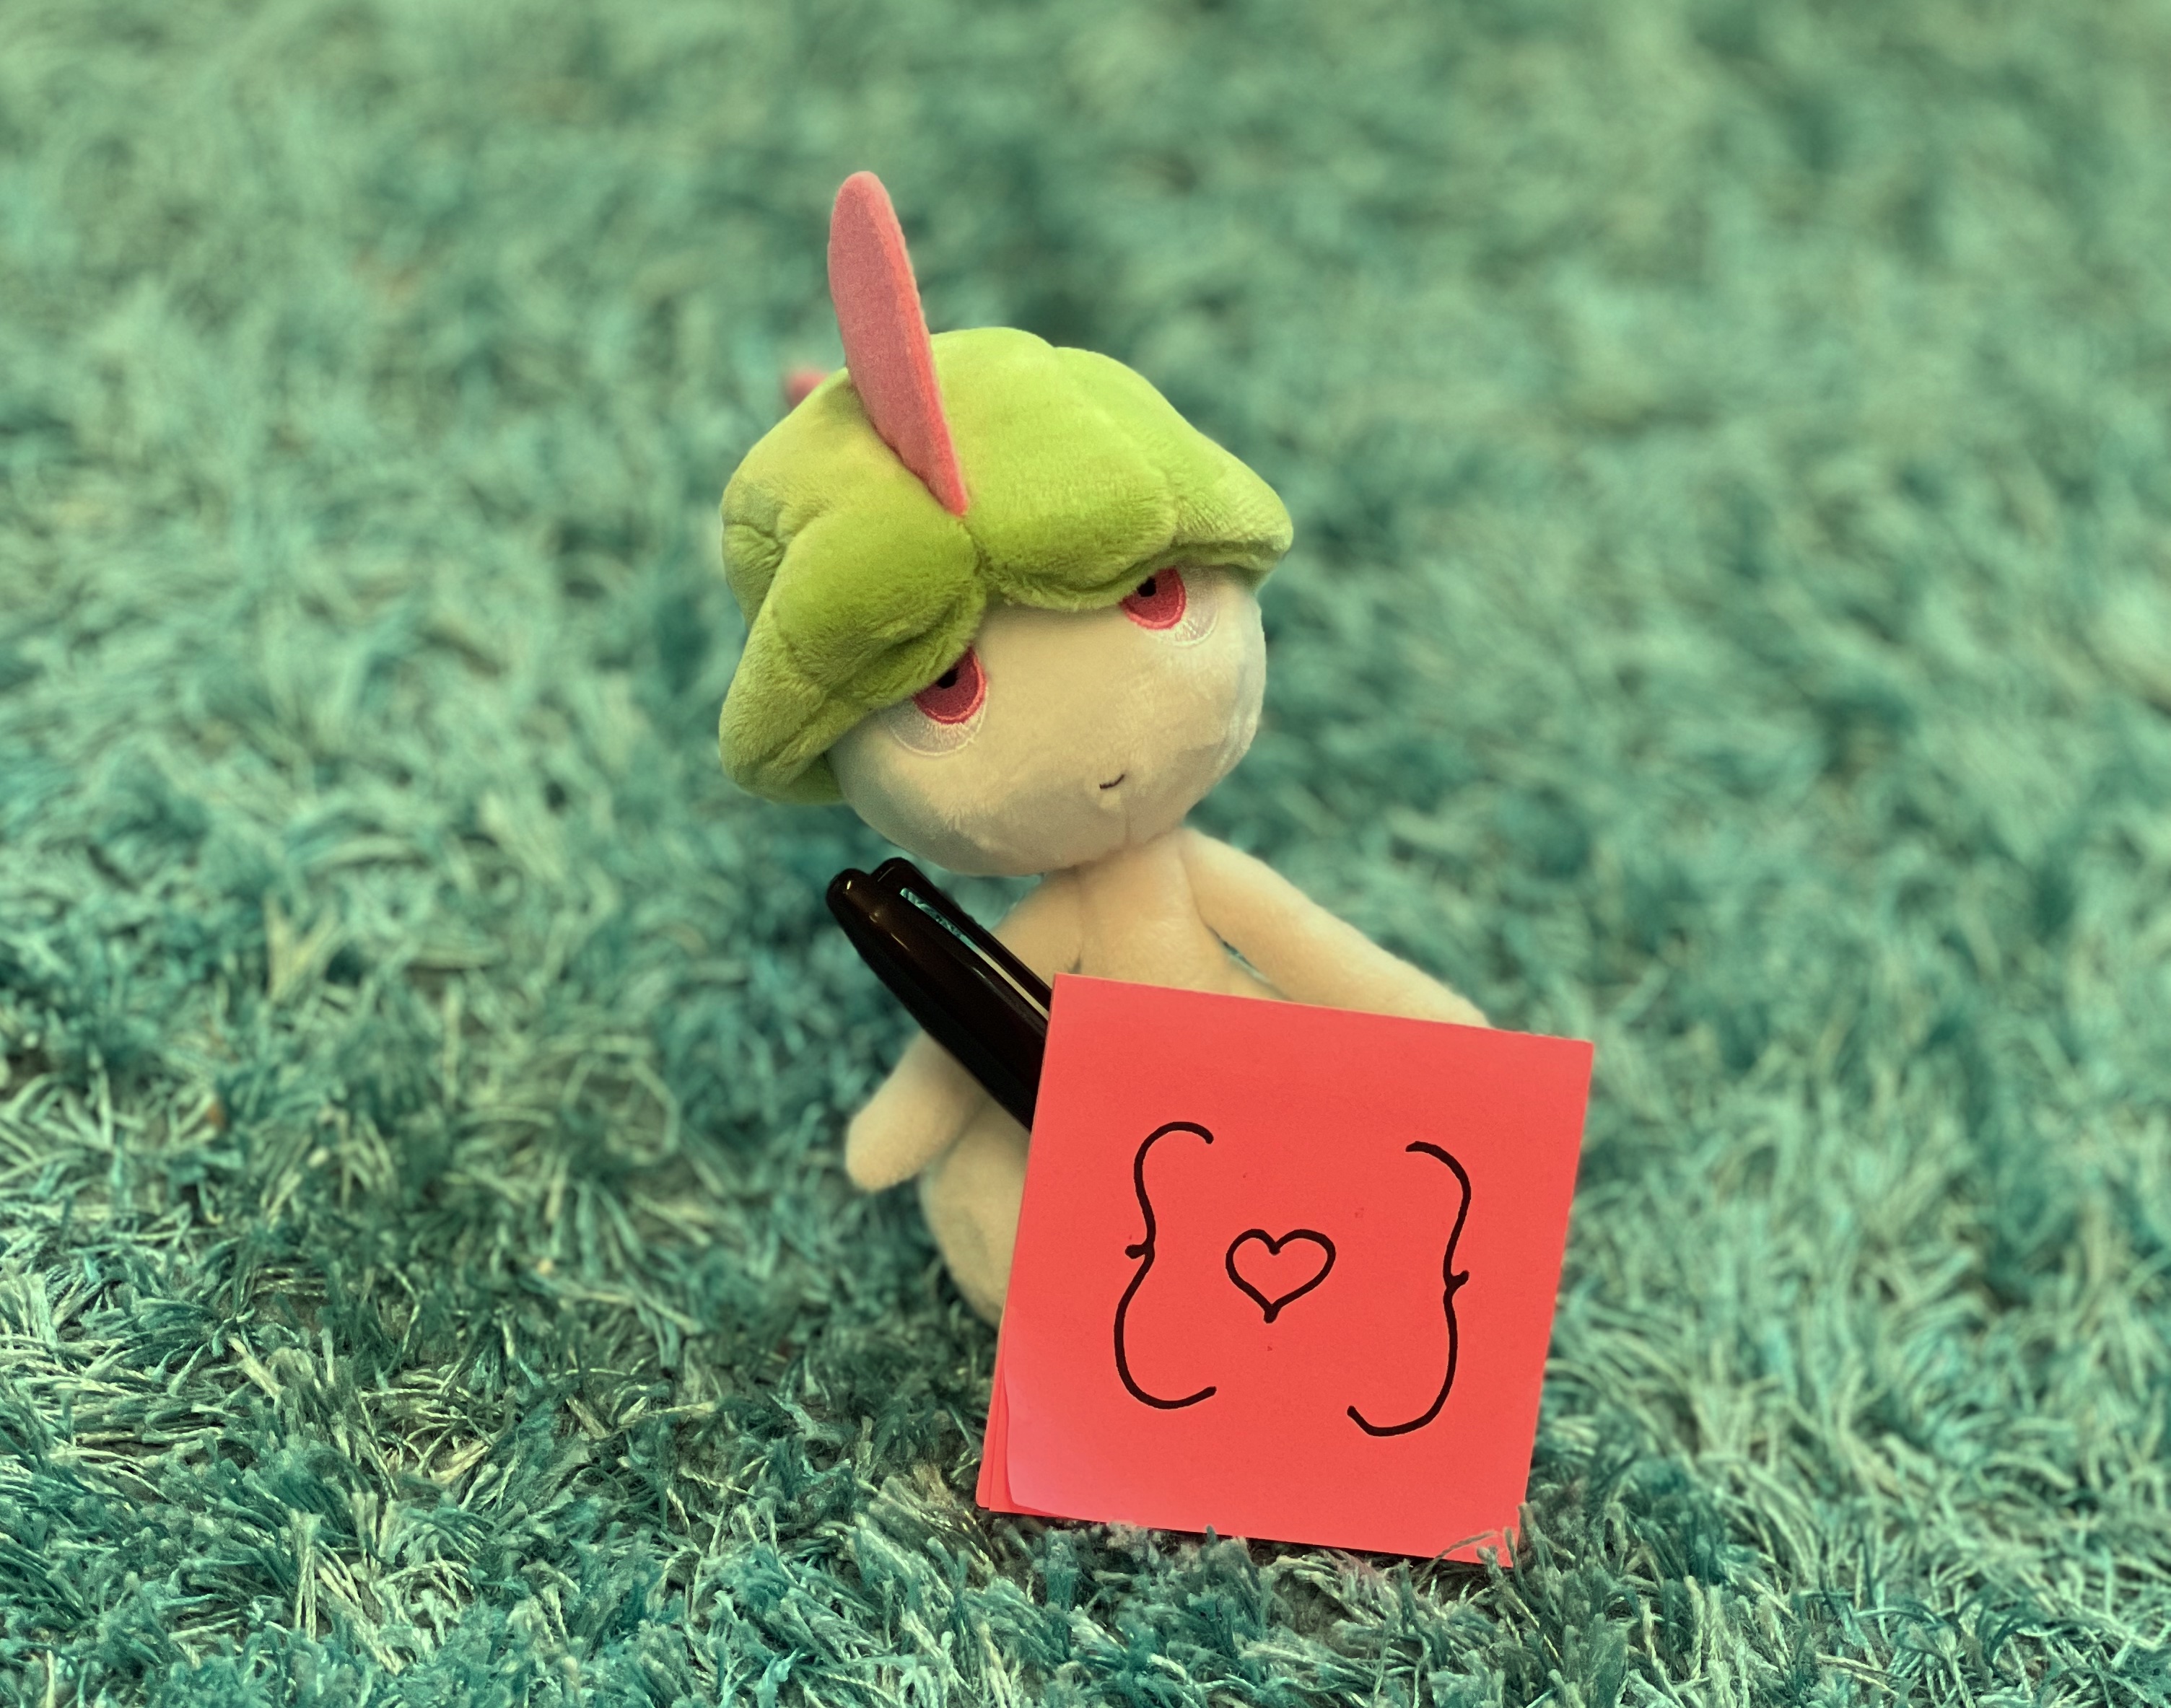 A plushy of the pokémon Ralts, holding sticky notes with 